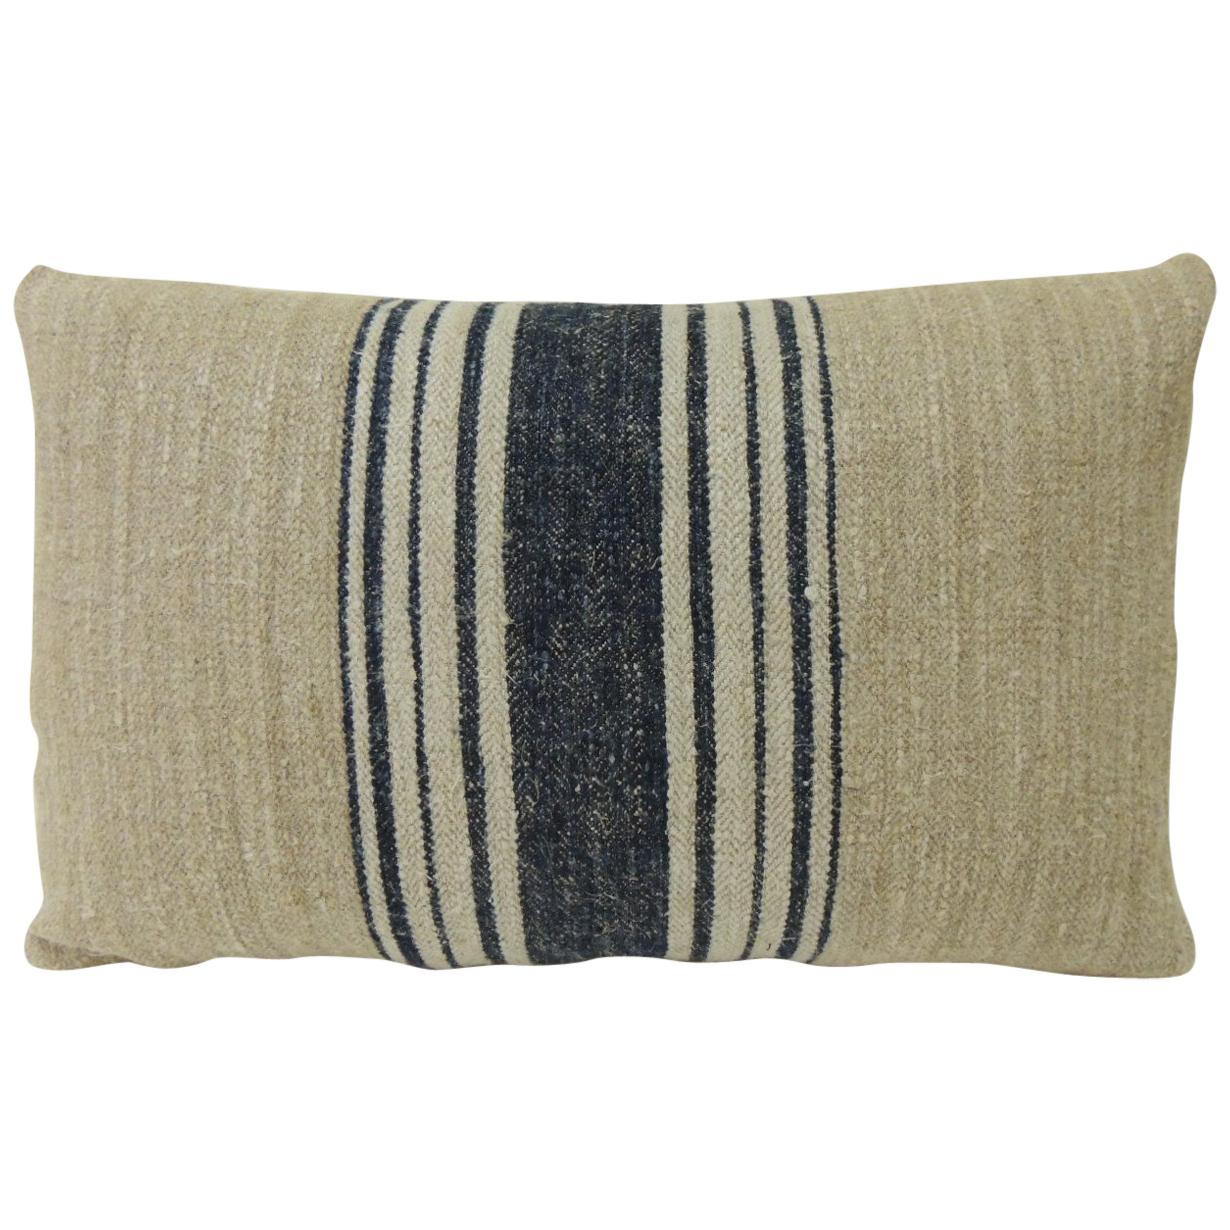 Grain Sack Fabric Antique Blue stripes pillow bench cushion Grain Sack 